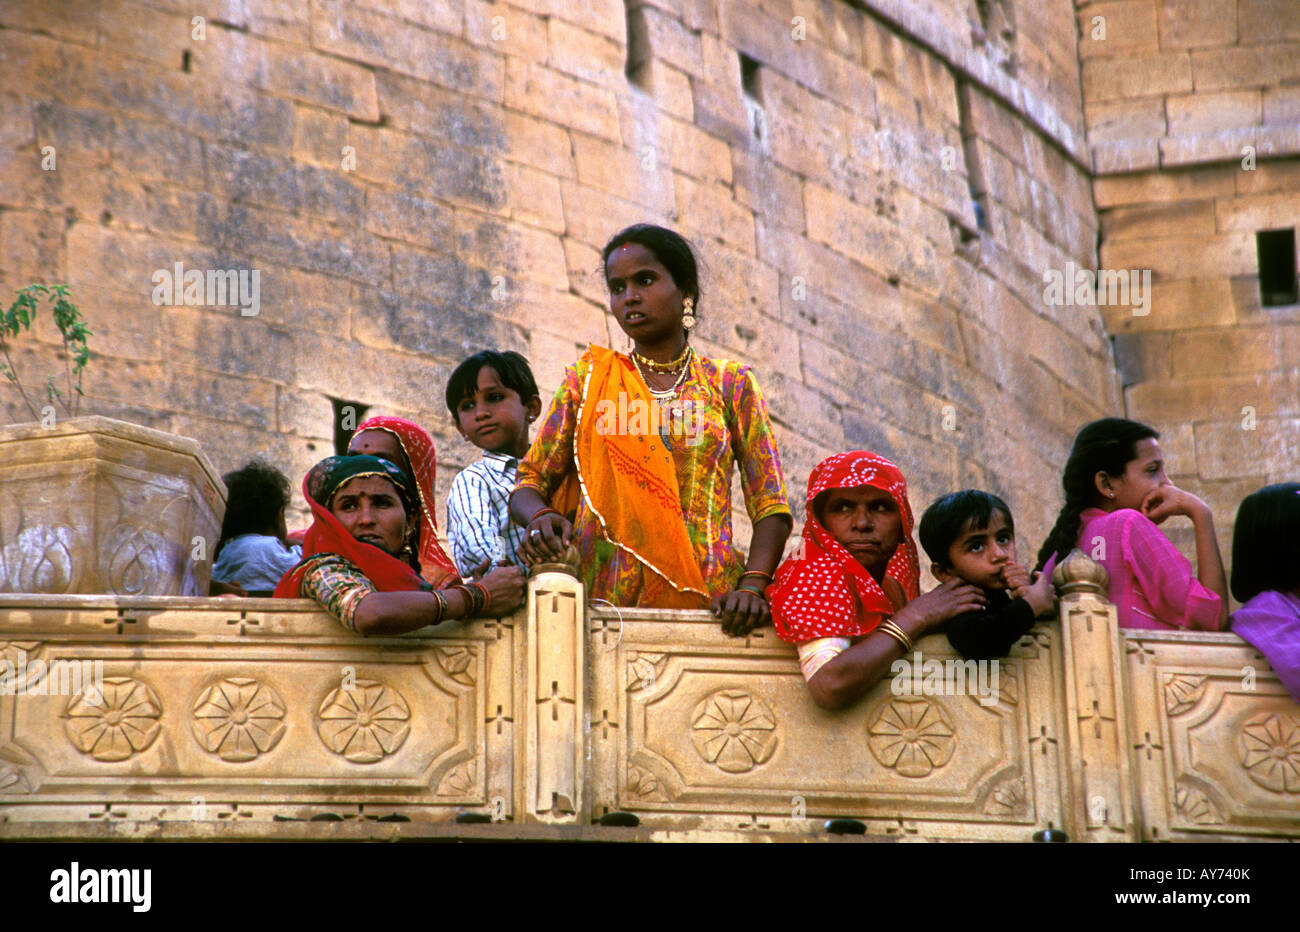 Frauen und Kinder zu sehen, vom Balkon des Jaisalmer Fort Rajasthan Indien für den Maharadscha ankommen Stockfoto